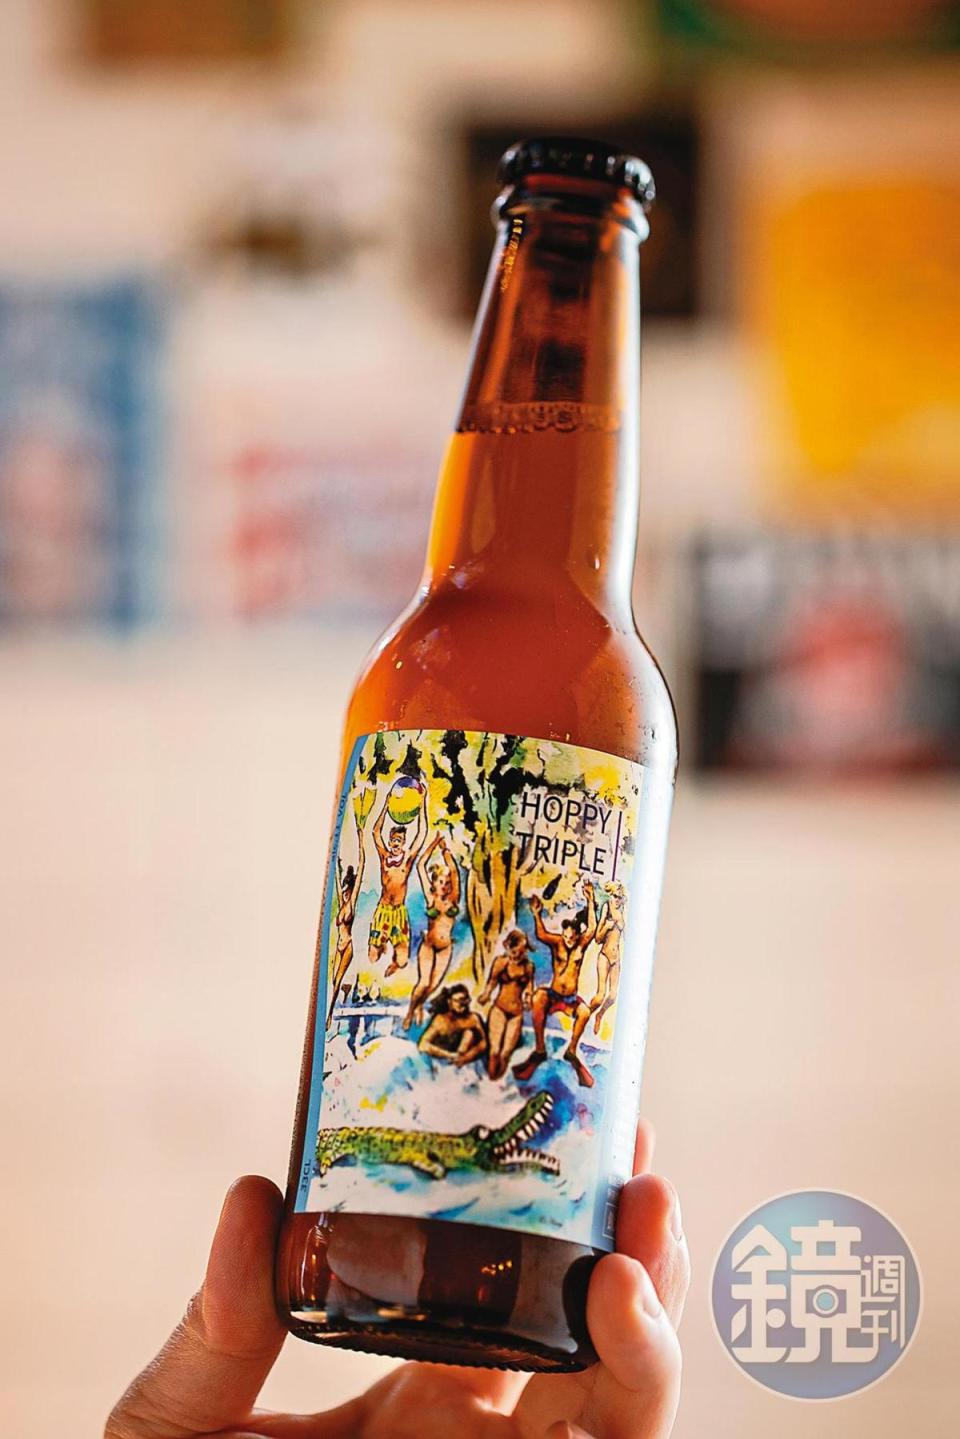 「三劍客」是常見於比利時的啤酒類型，而福爾摩沙成功釀造了這支同時兼顧麥香與啤酒花香的Belgian- Style Triple 啤酒。（220元／瓶）